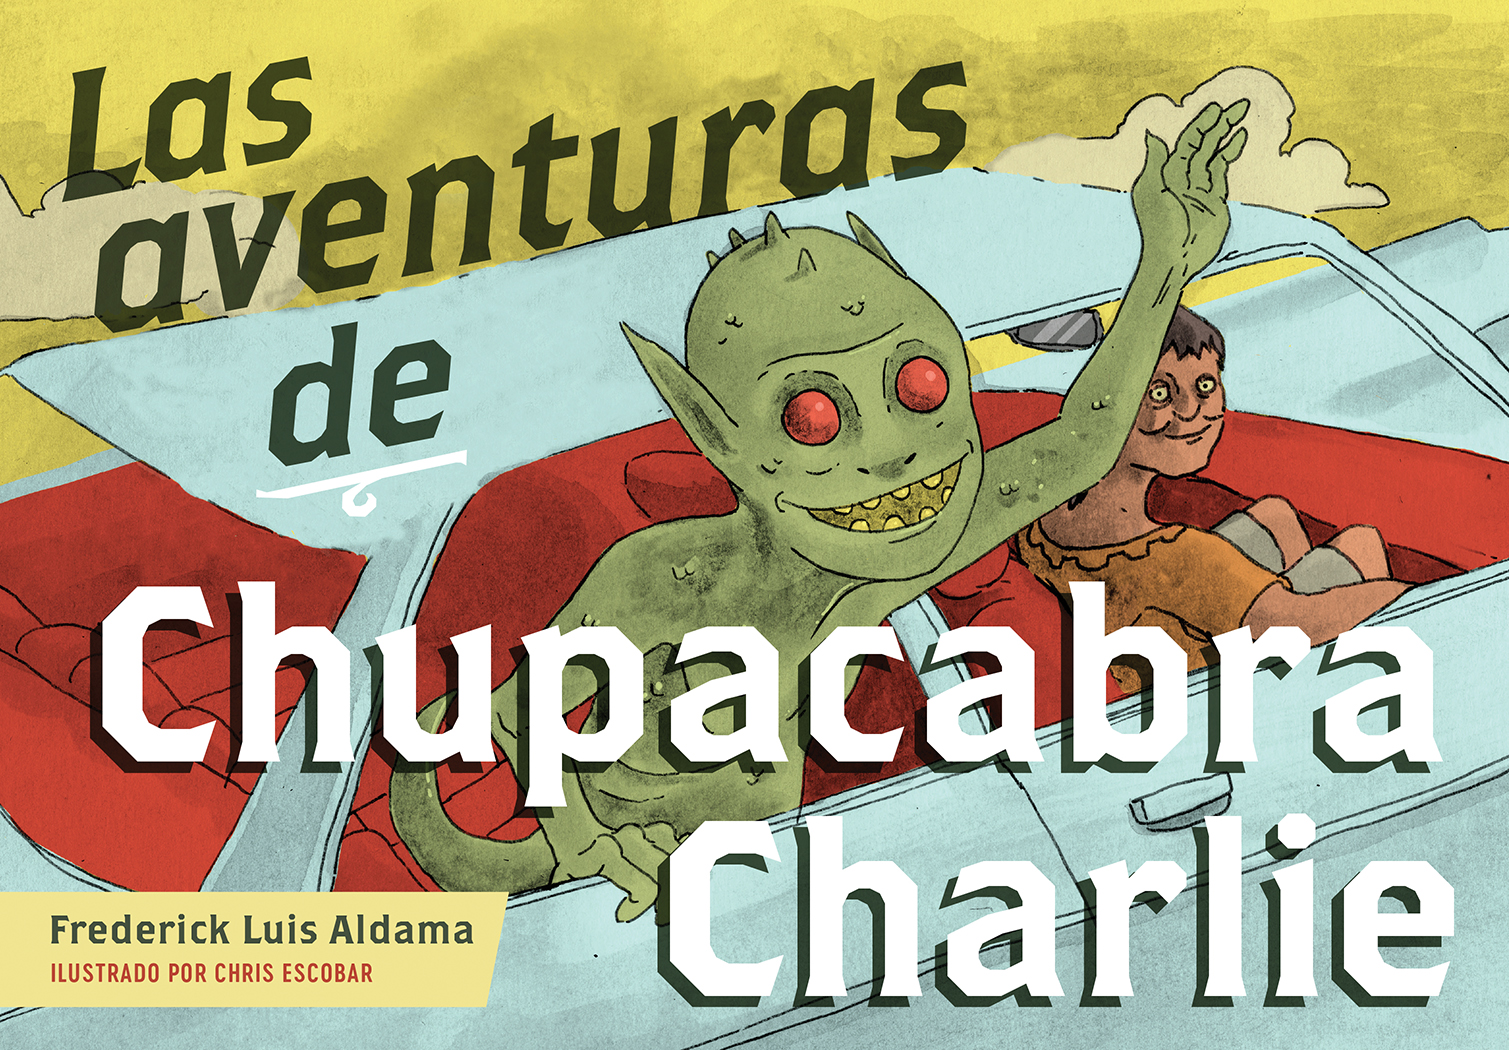 Las aventuras de Chupacabra Charlie cover